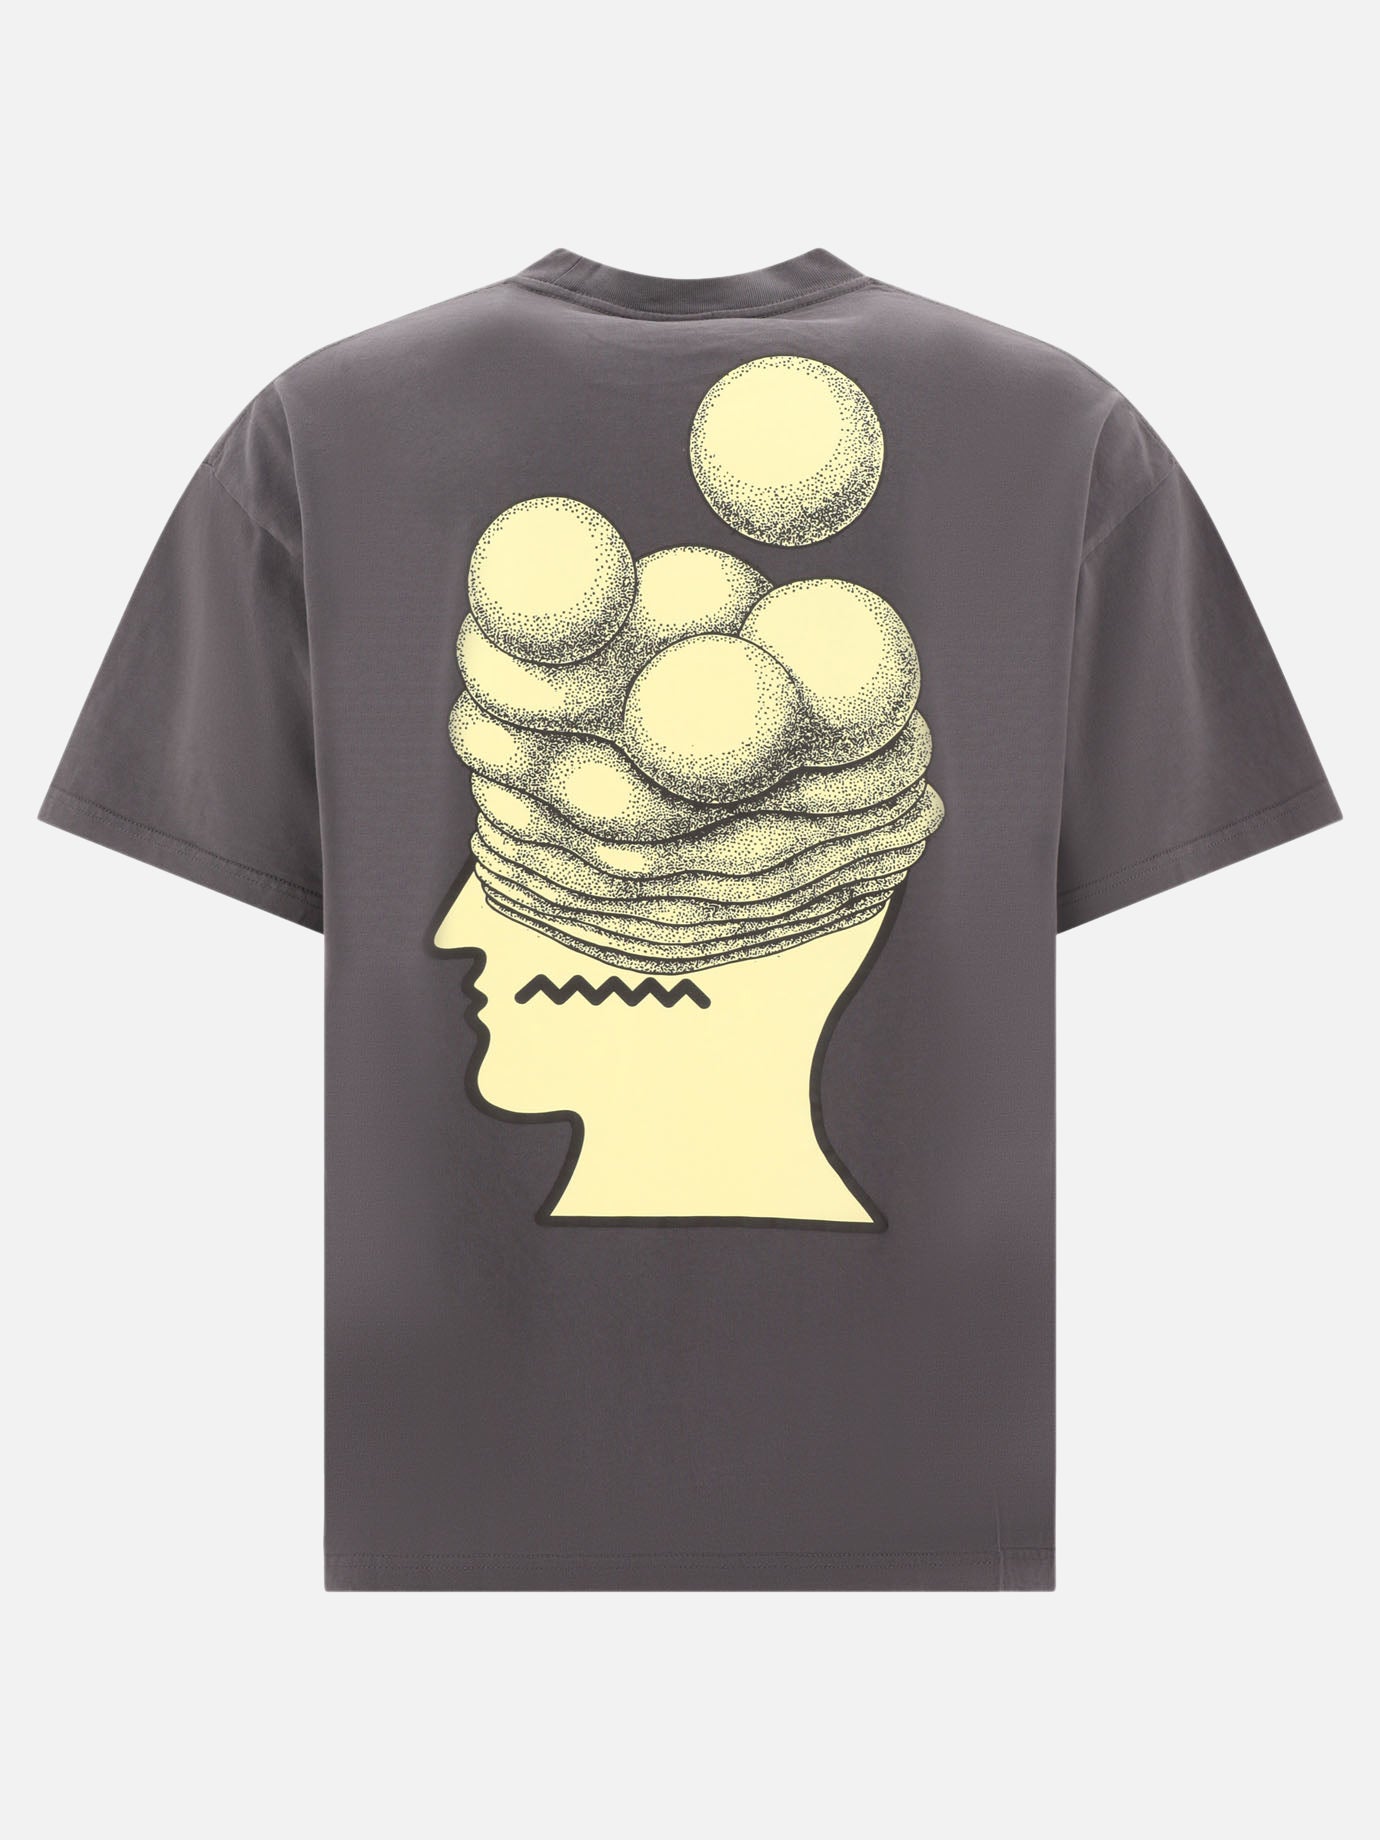 "Brain Growth" t-shirt